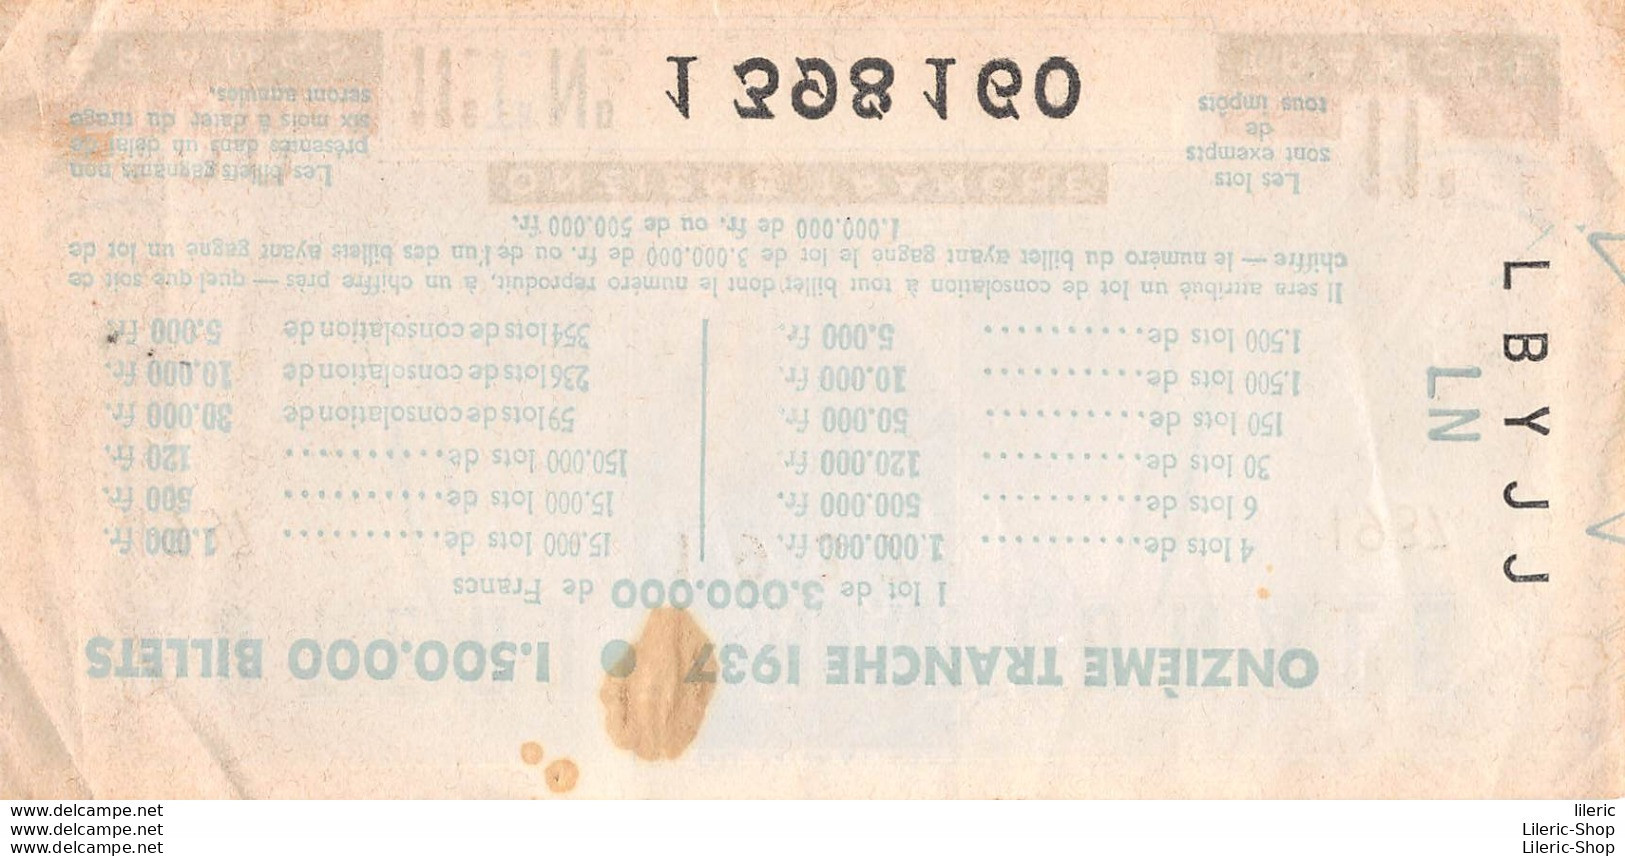 LOTERIE NATIONALE  // TICKET ONZIEME TRANCHE 100 FRANCS ANNEE 1937 - Loterijbiljetten